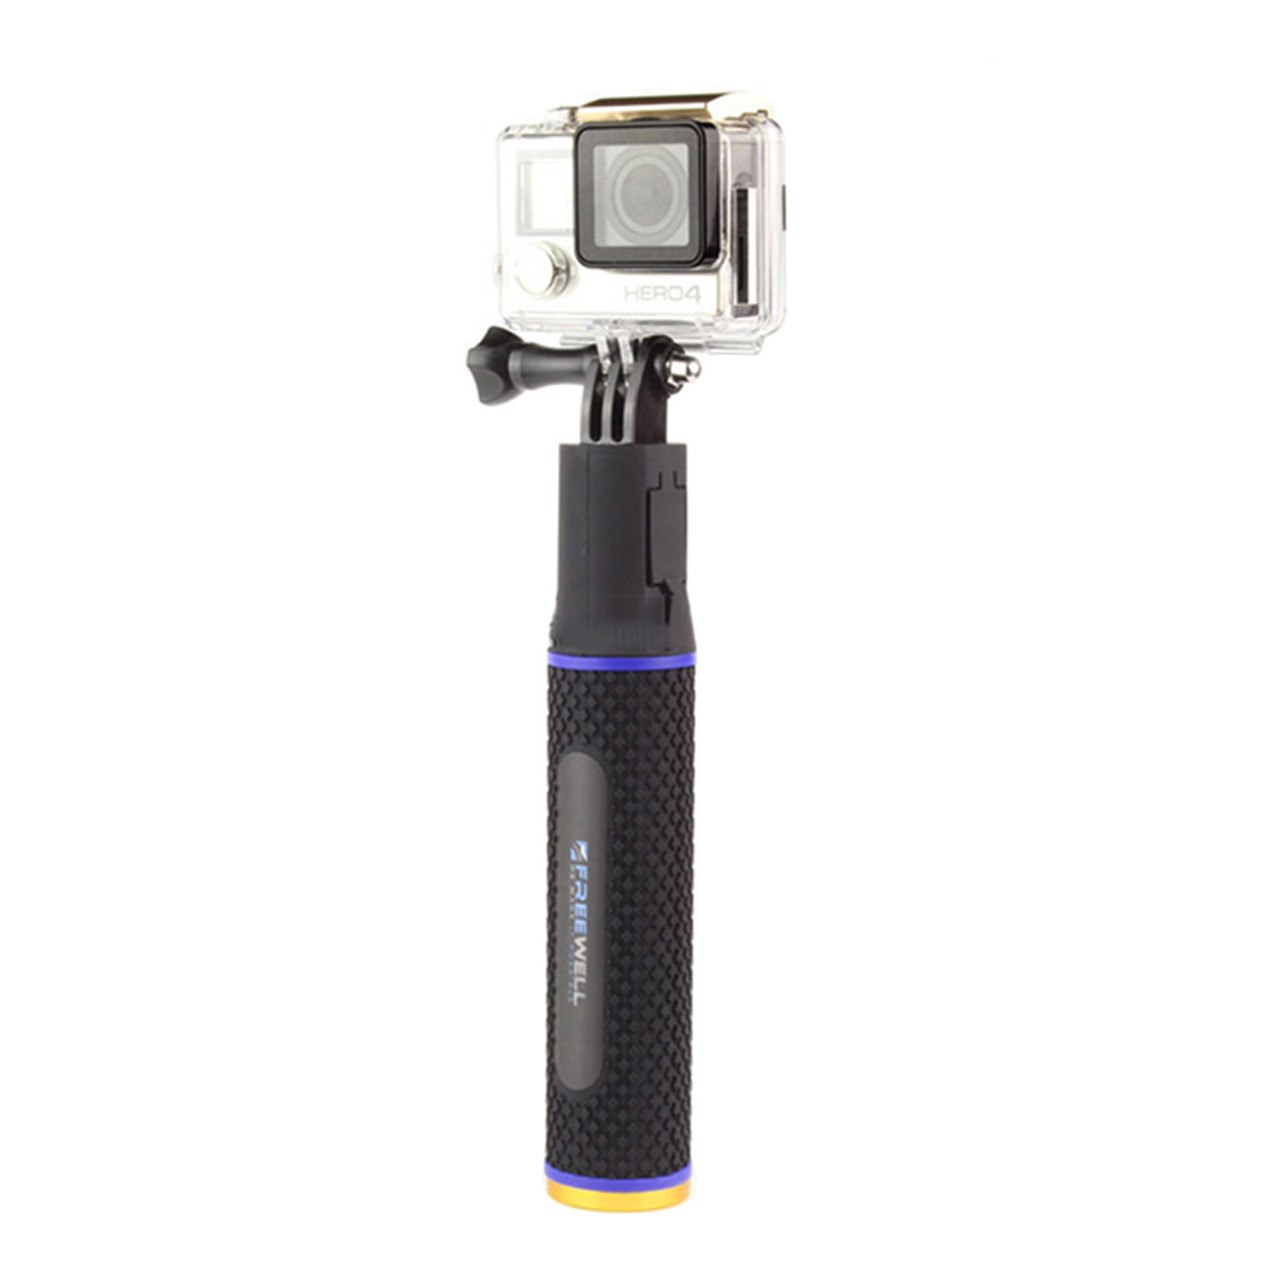 مونوپاد و شارژر همراه مدل H195 مناسب برای دوربین ورزشی گوپرو